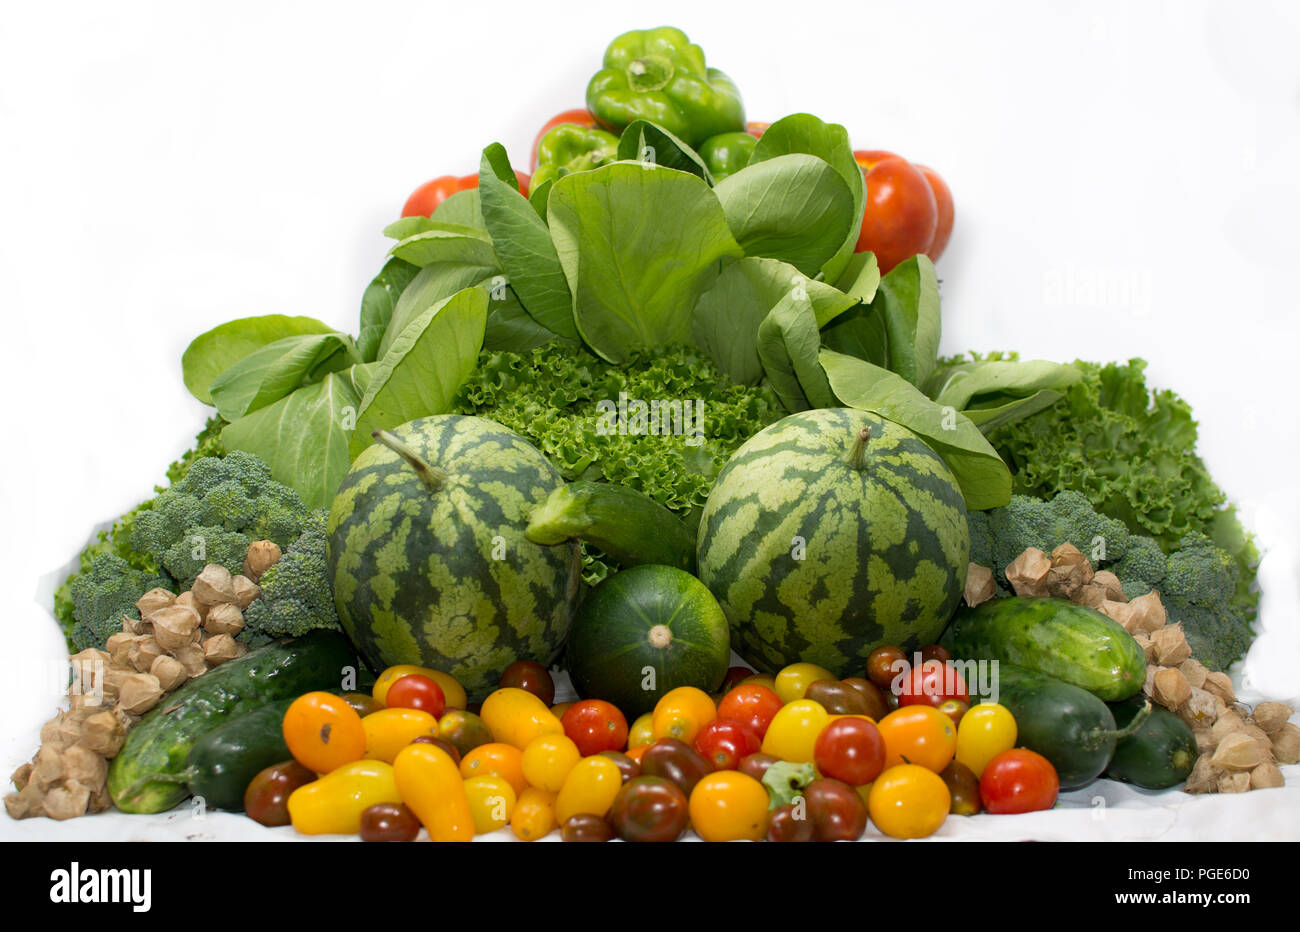 Panier de légumes bio de l'agriculture familiale Banque D'Images